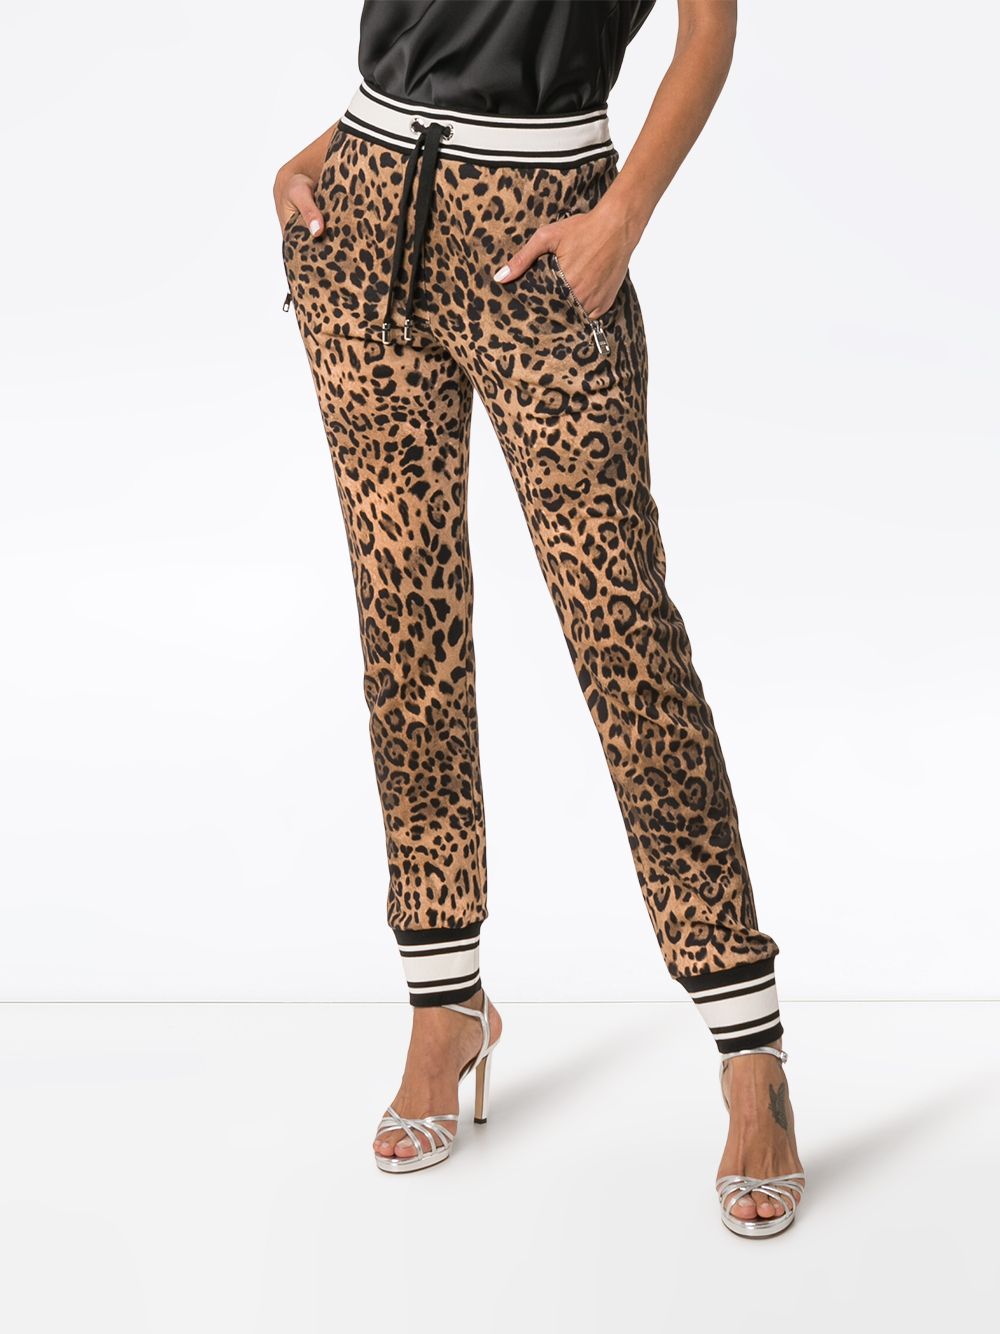 фото Dolce & Gabbana спортивные брюки с леопардовым принтом